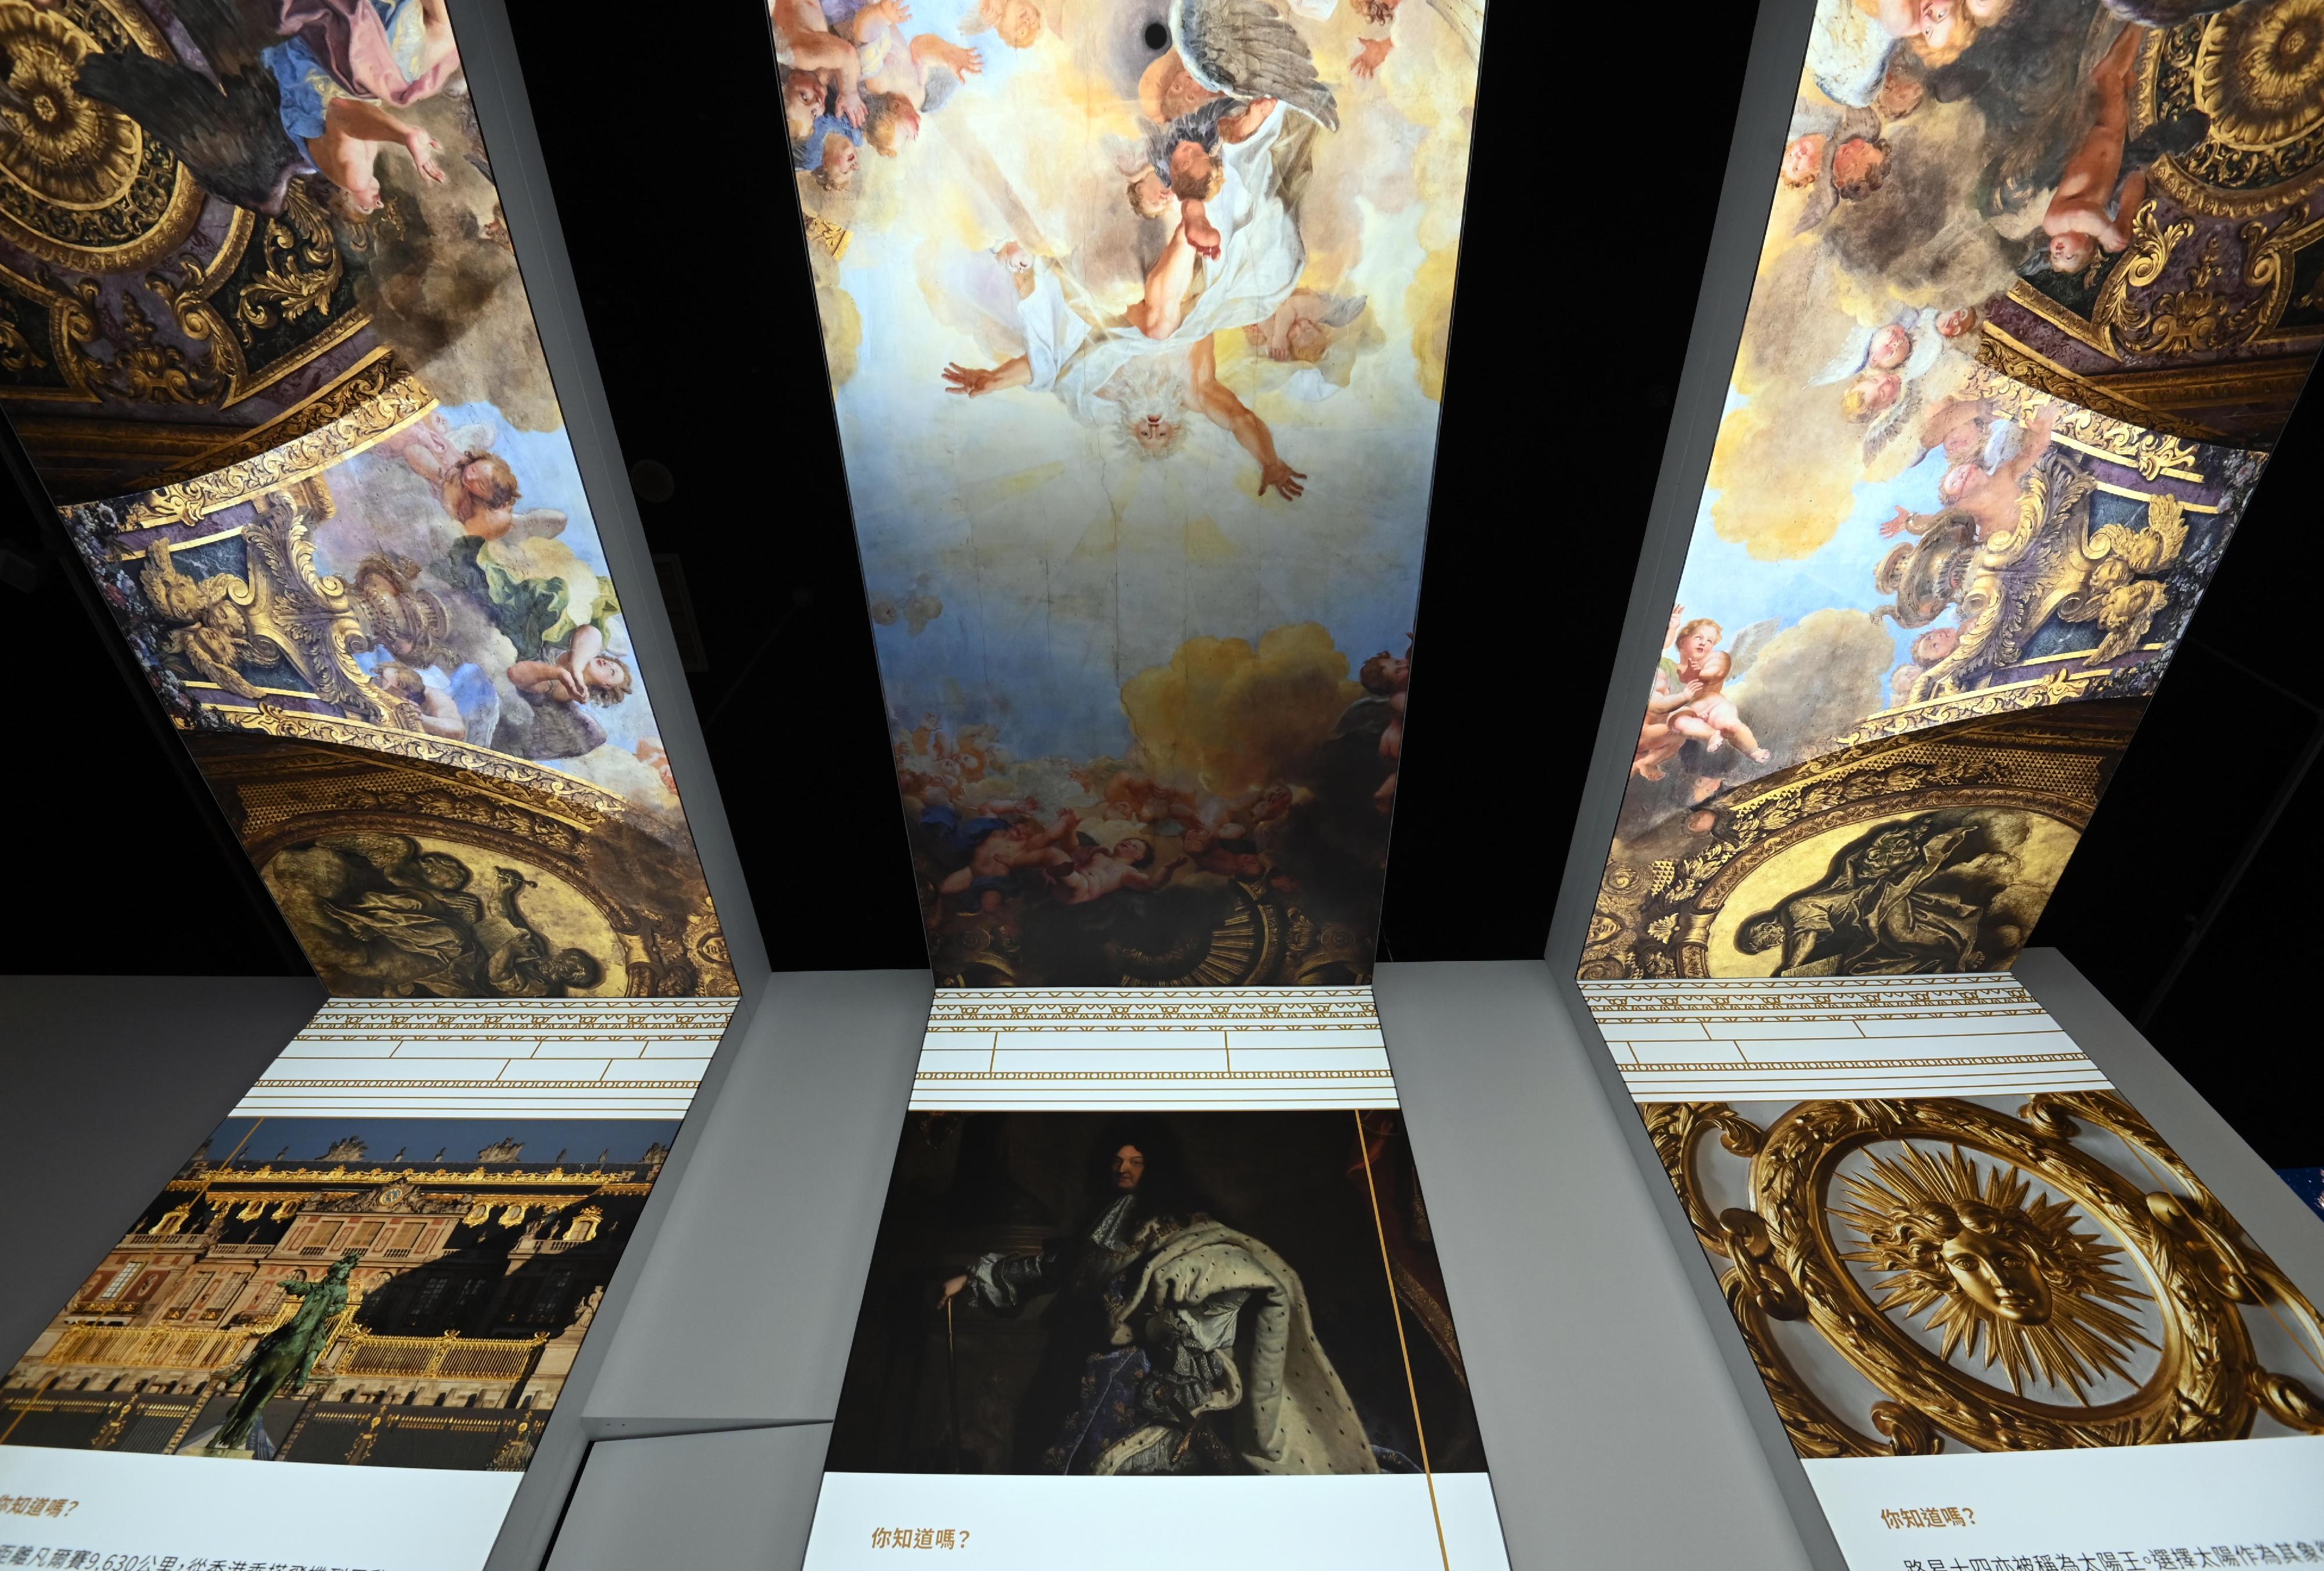 香港文化博物馆、凡尔赛宫及法国五月艺术节首度合作，今日（四月十九日）起举行「虚拟凡尔赛宫之旅」展览。